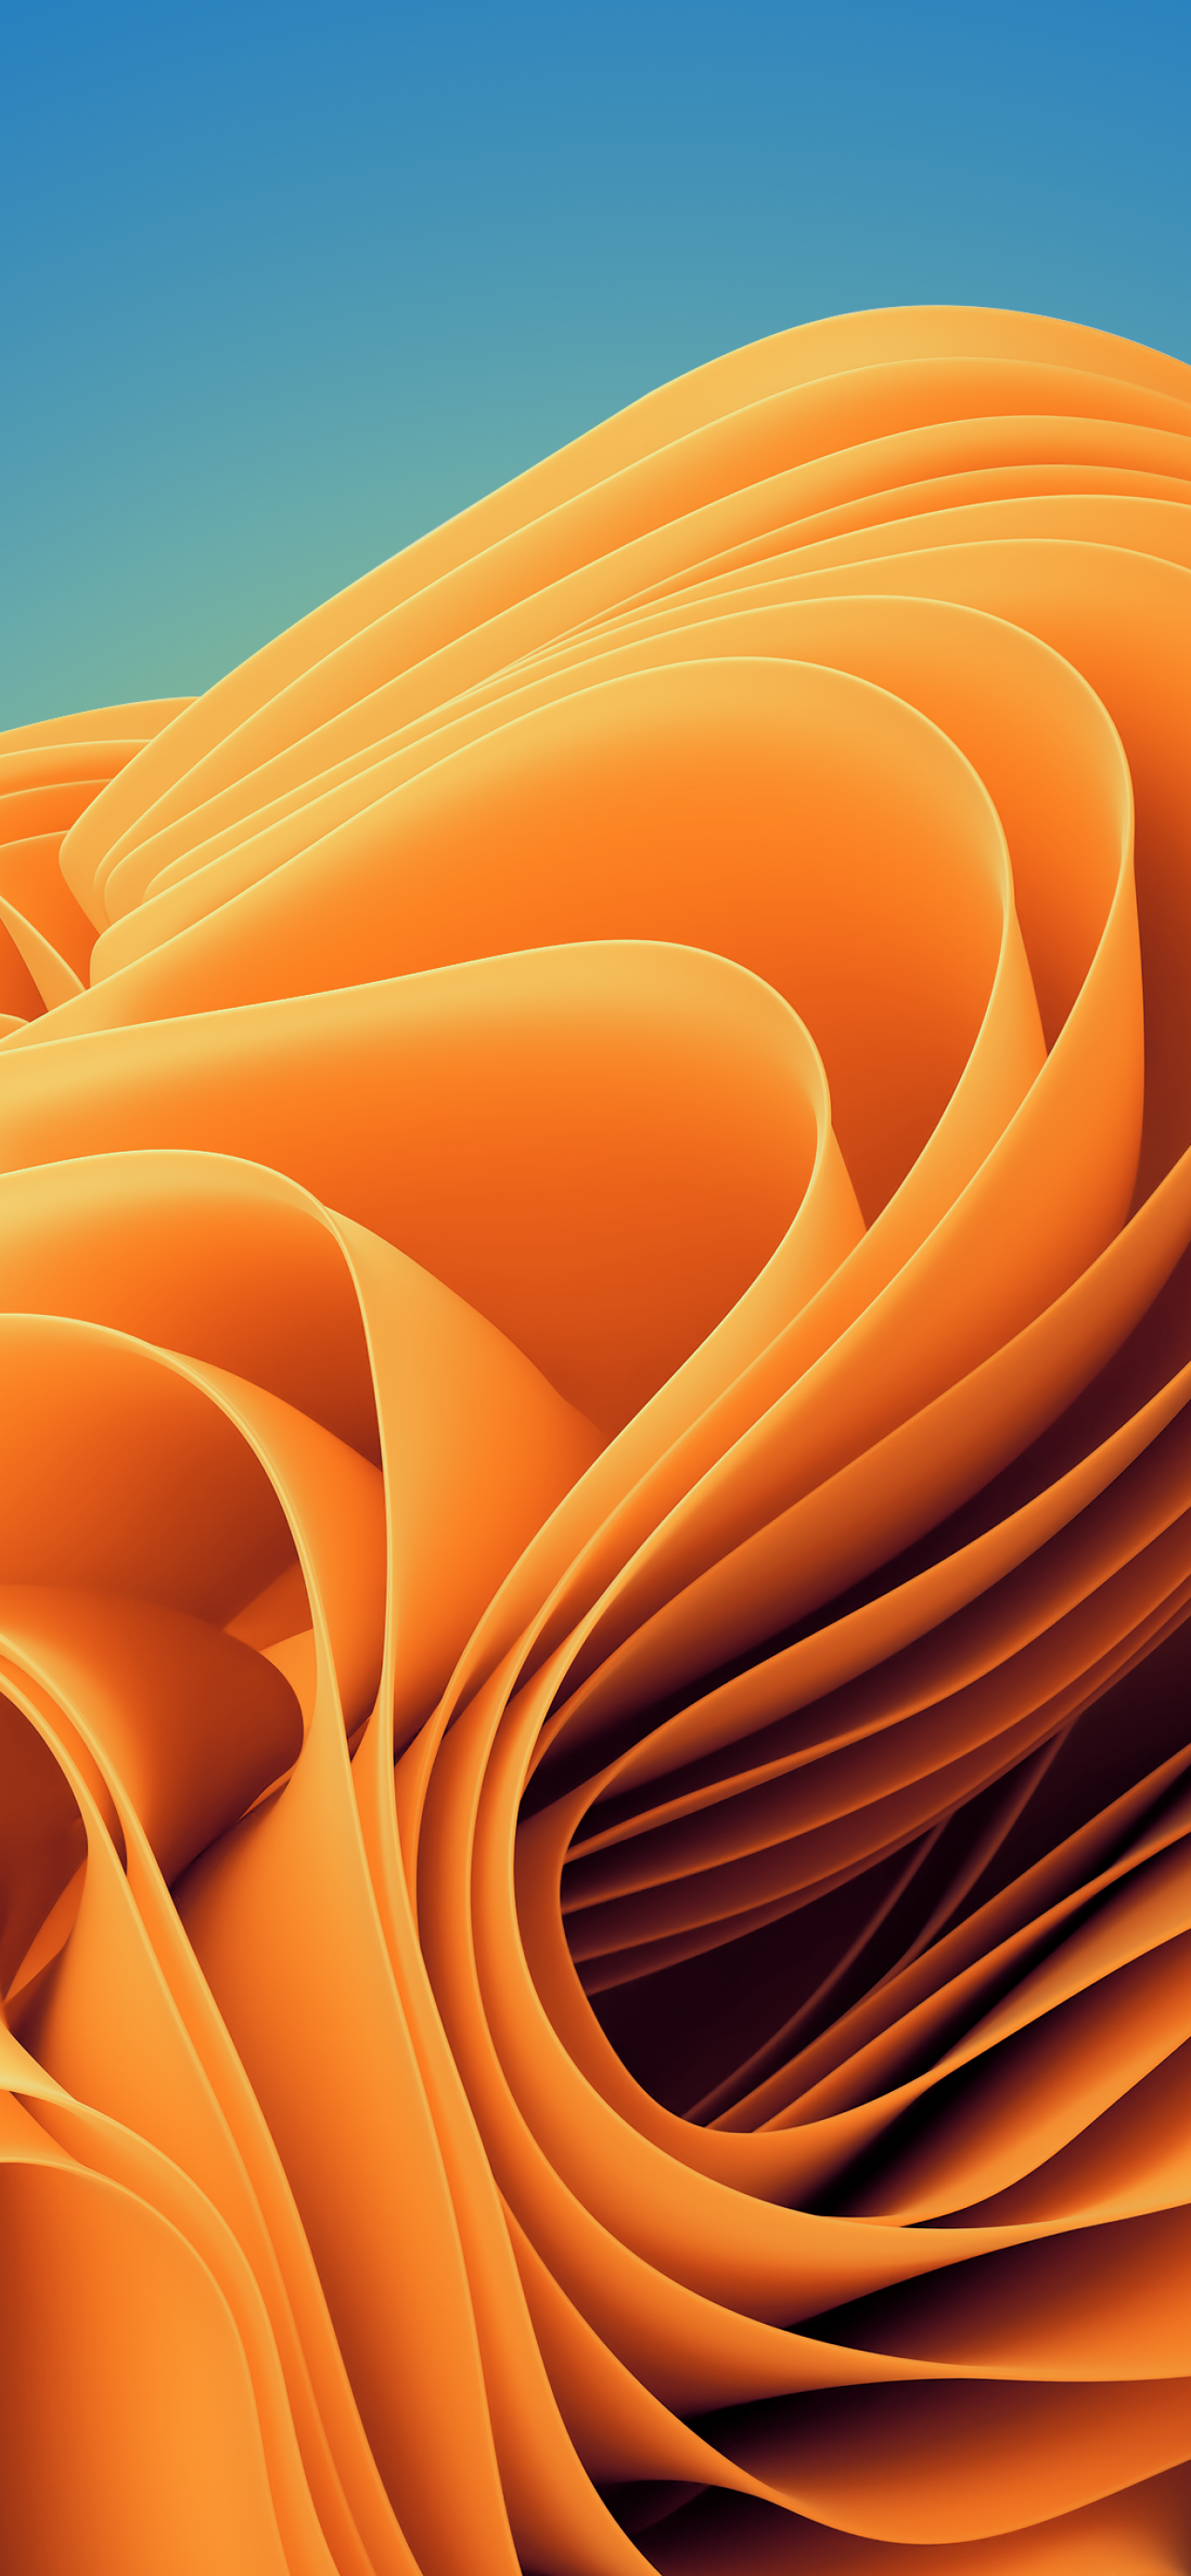 Với hình nền Windows 11 Wallpaper 4K - Sunset Orange, thiết bị của bạn sẽ trở nên đầy màu sắc và mới mẻ. Màu cam đỏ rực này sẽ mang đến cho bạn sự ấm áp và cuốn hút.